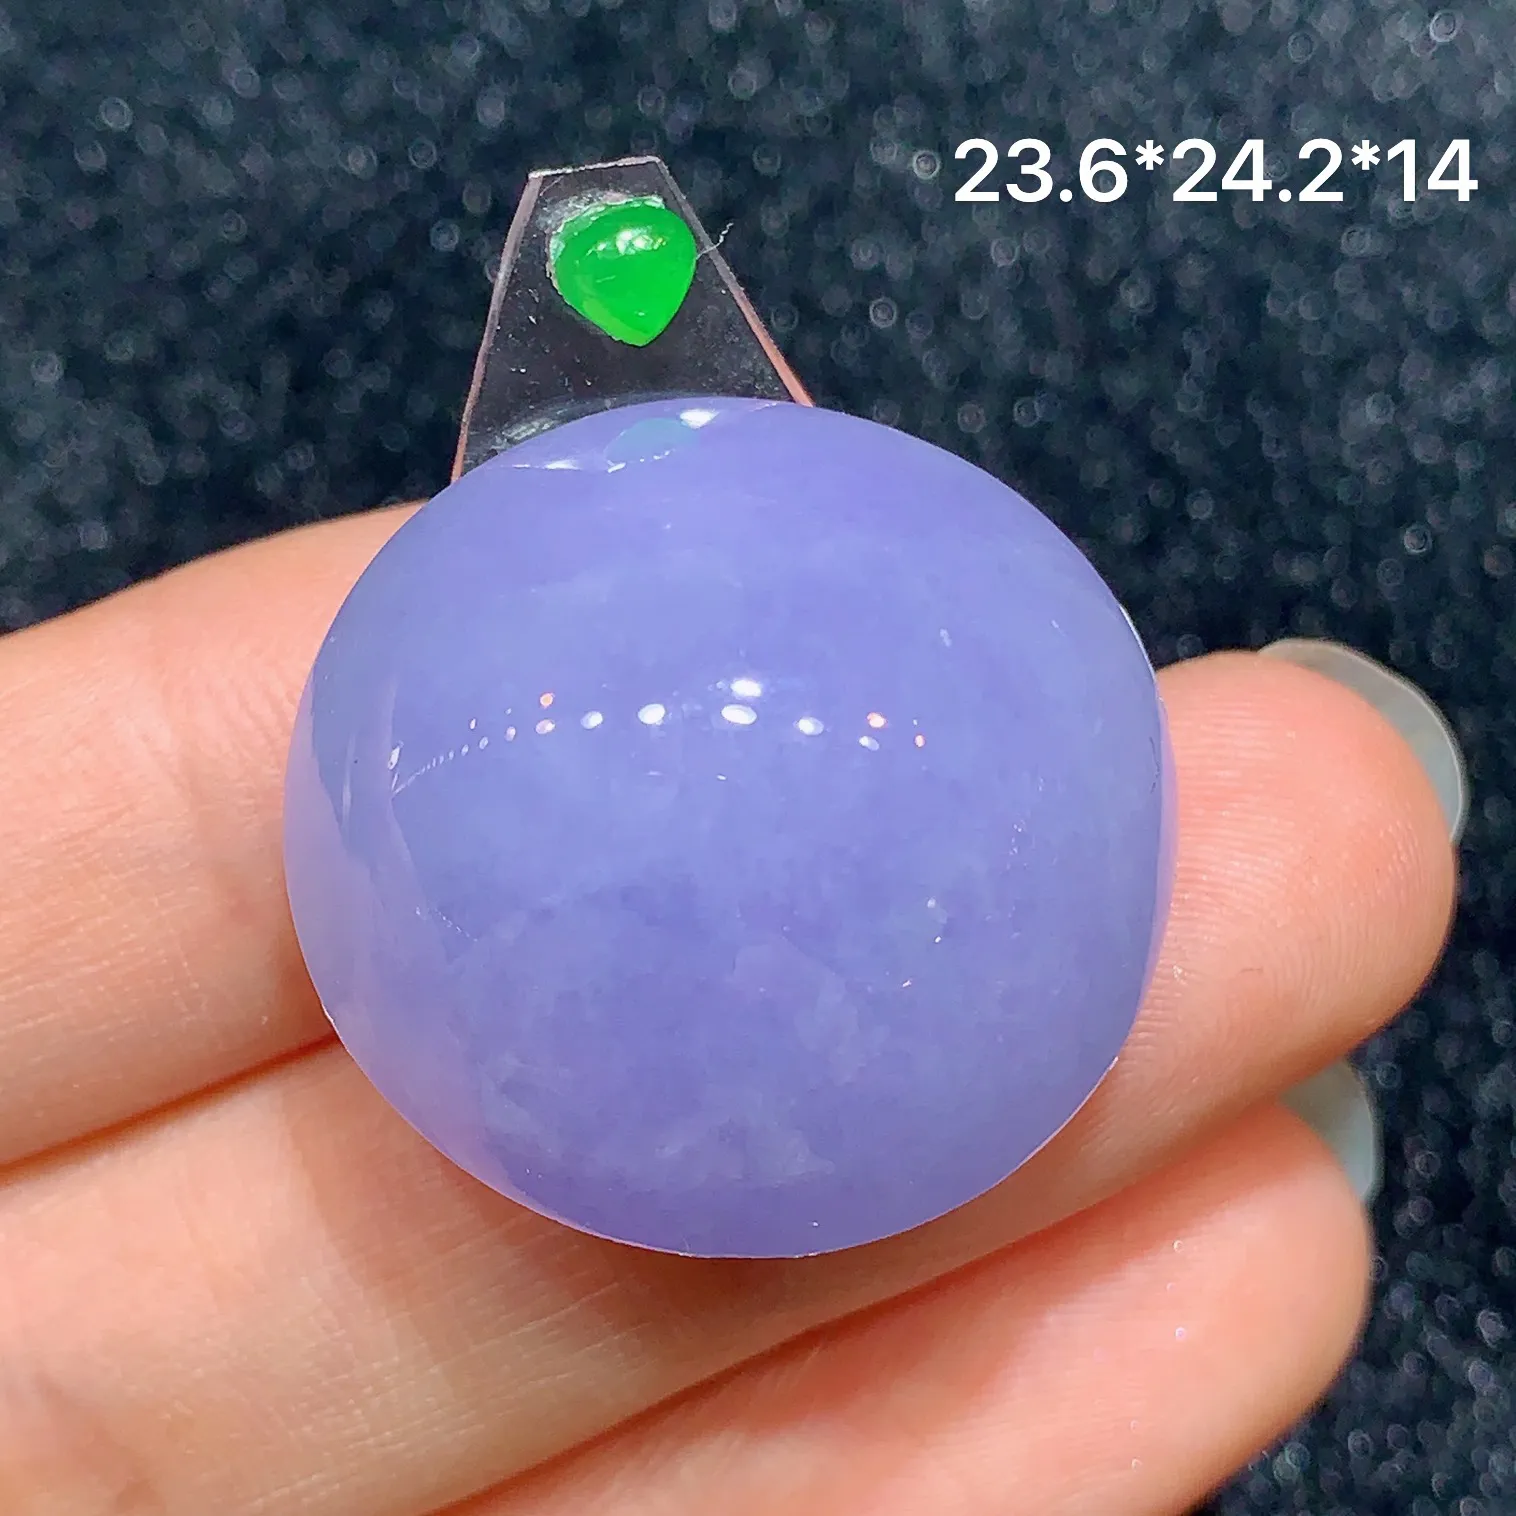 镶嵌款 紫罗兰蛋面 玉质细腻 色泽艳丽 搭配绿色小蛋面 整体尺寸23.6*24.2*14